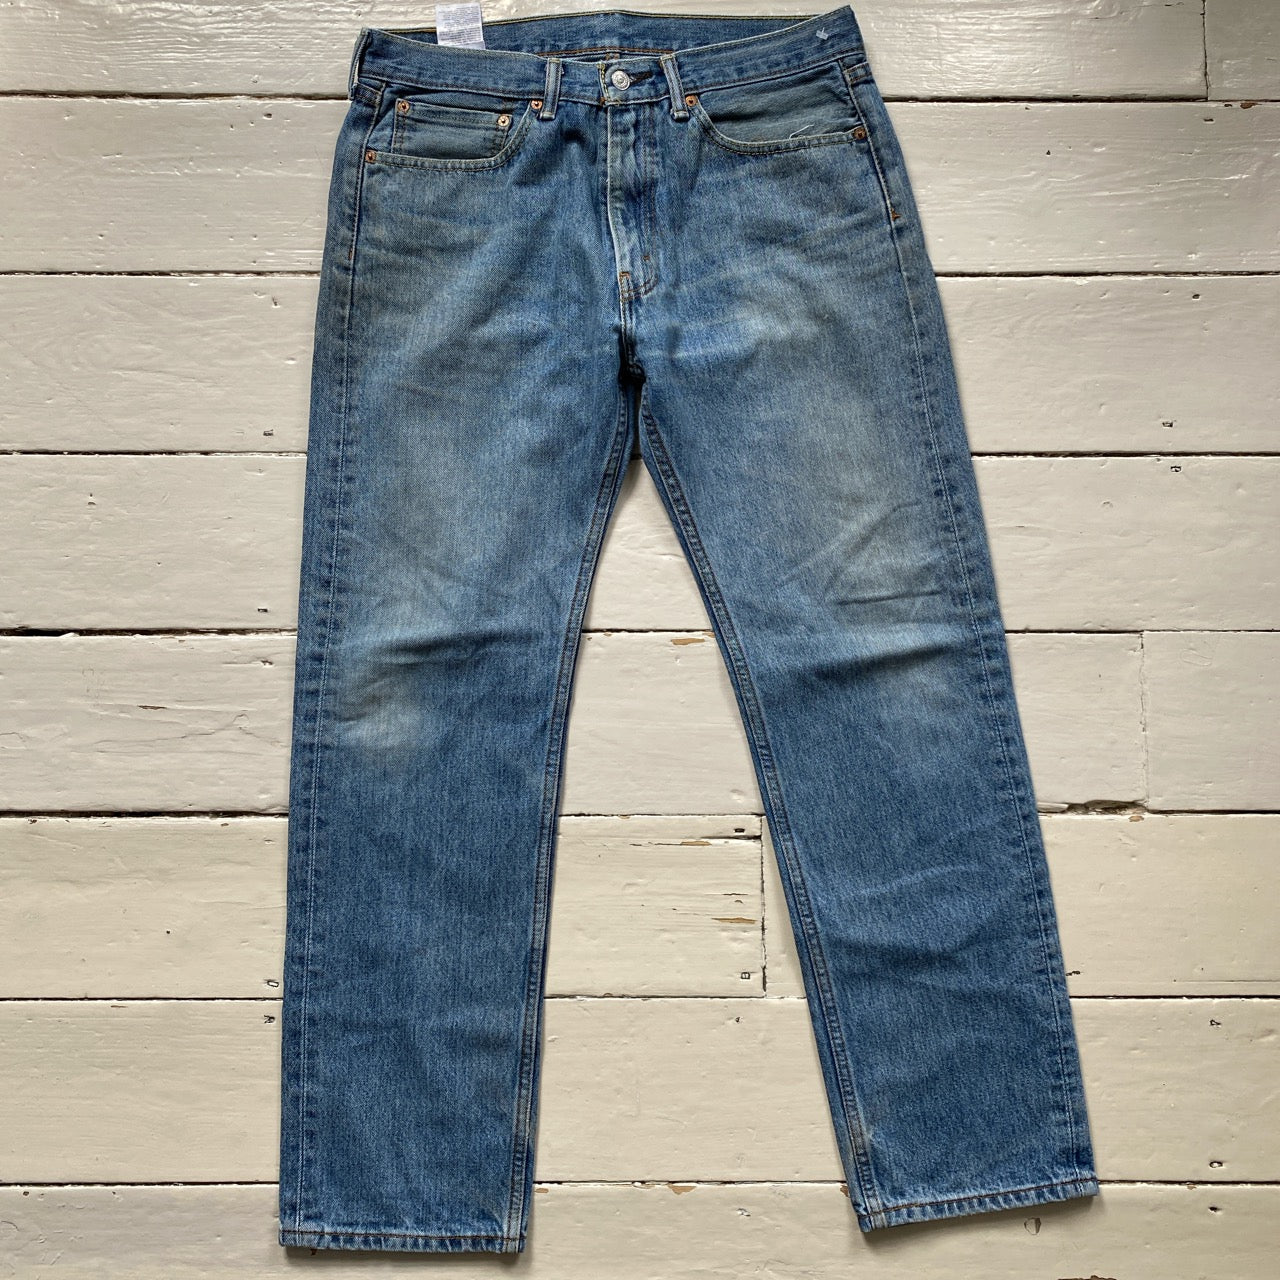 Levis 505 Light Blue Jeans (34/31)